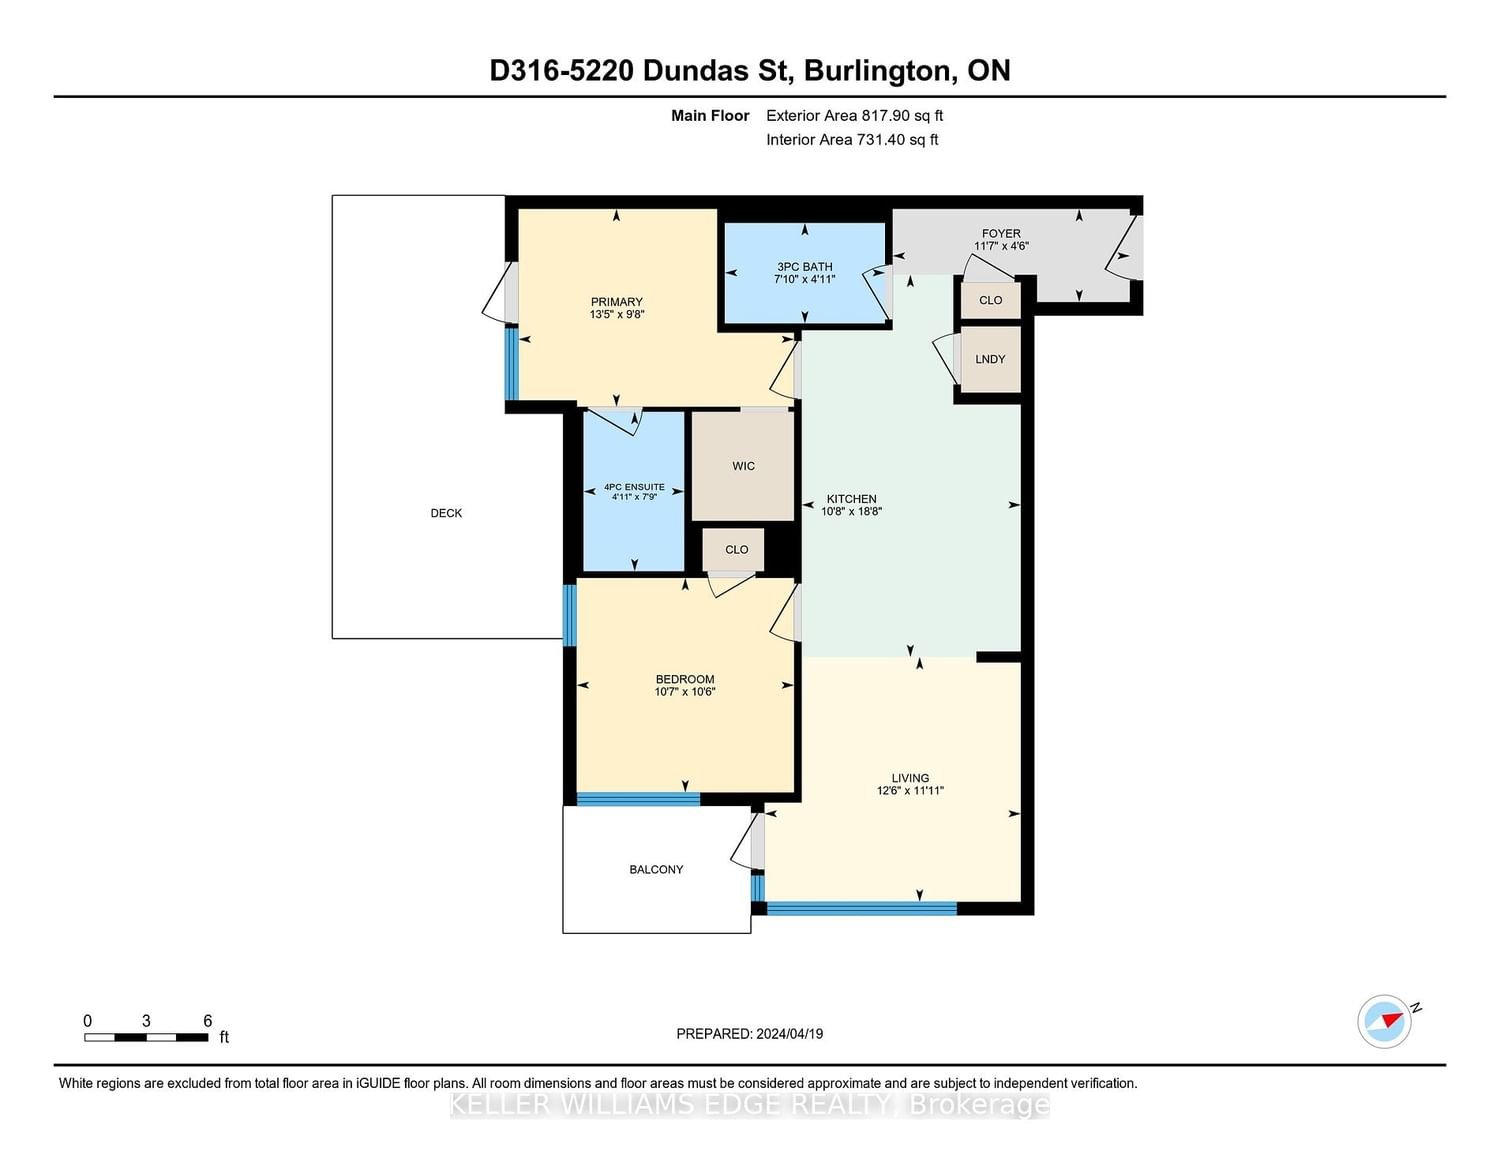 5220 Dundas St, unit D316 for sale - image #40